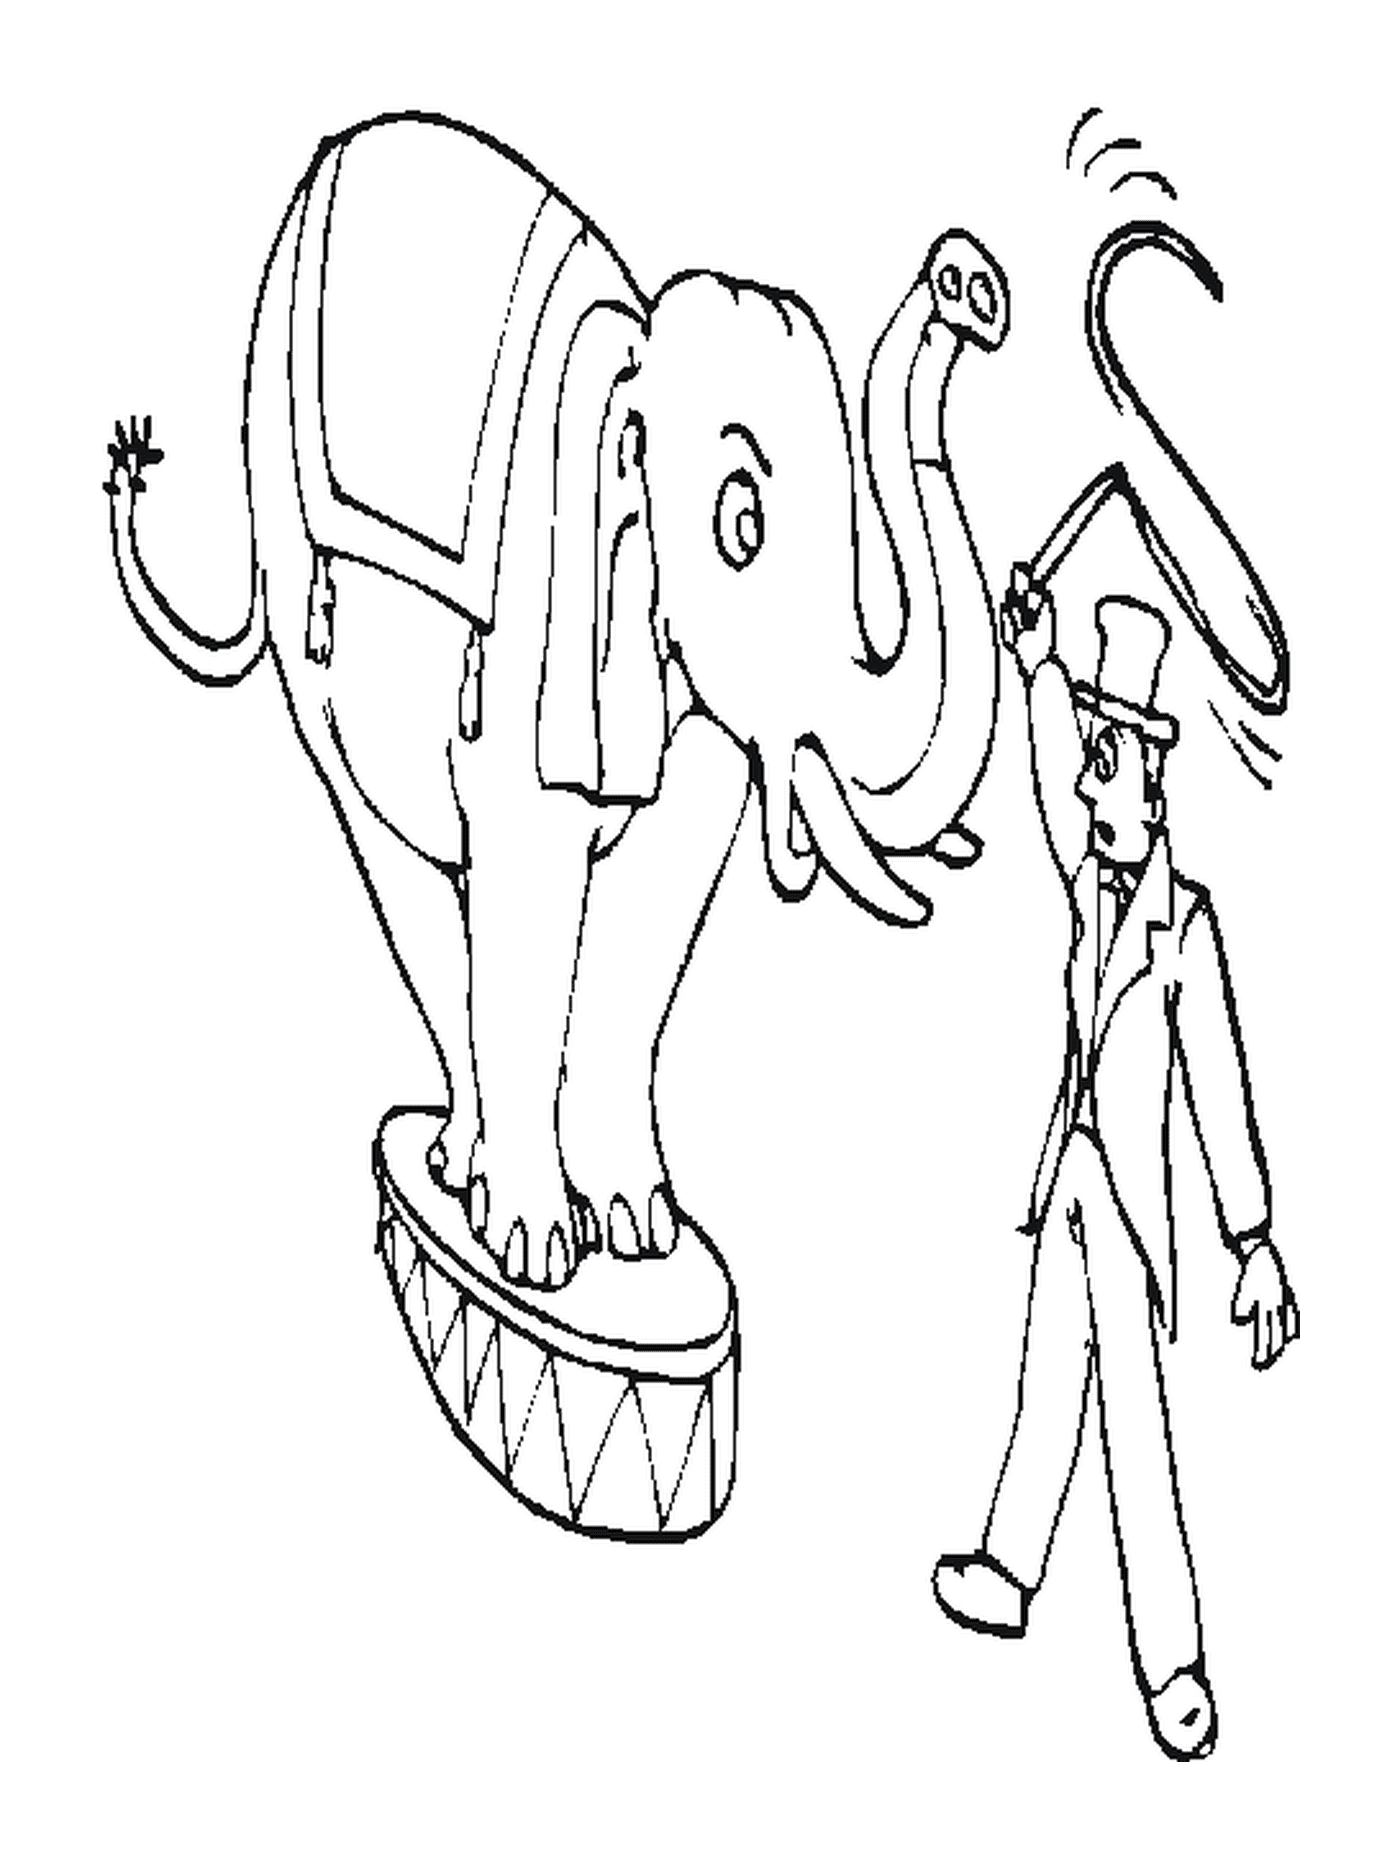  Тренер с слоном для цирка 